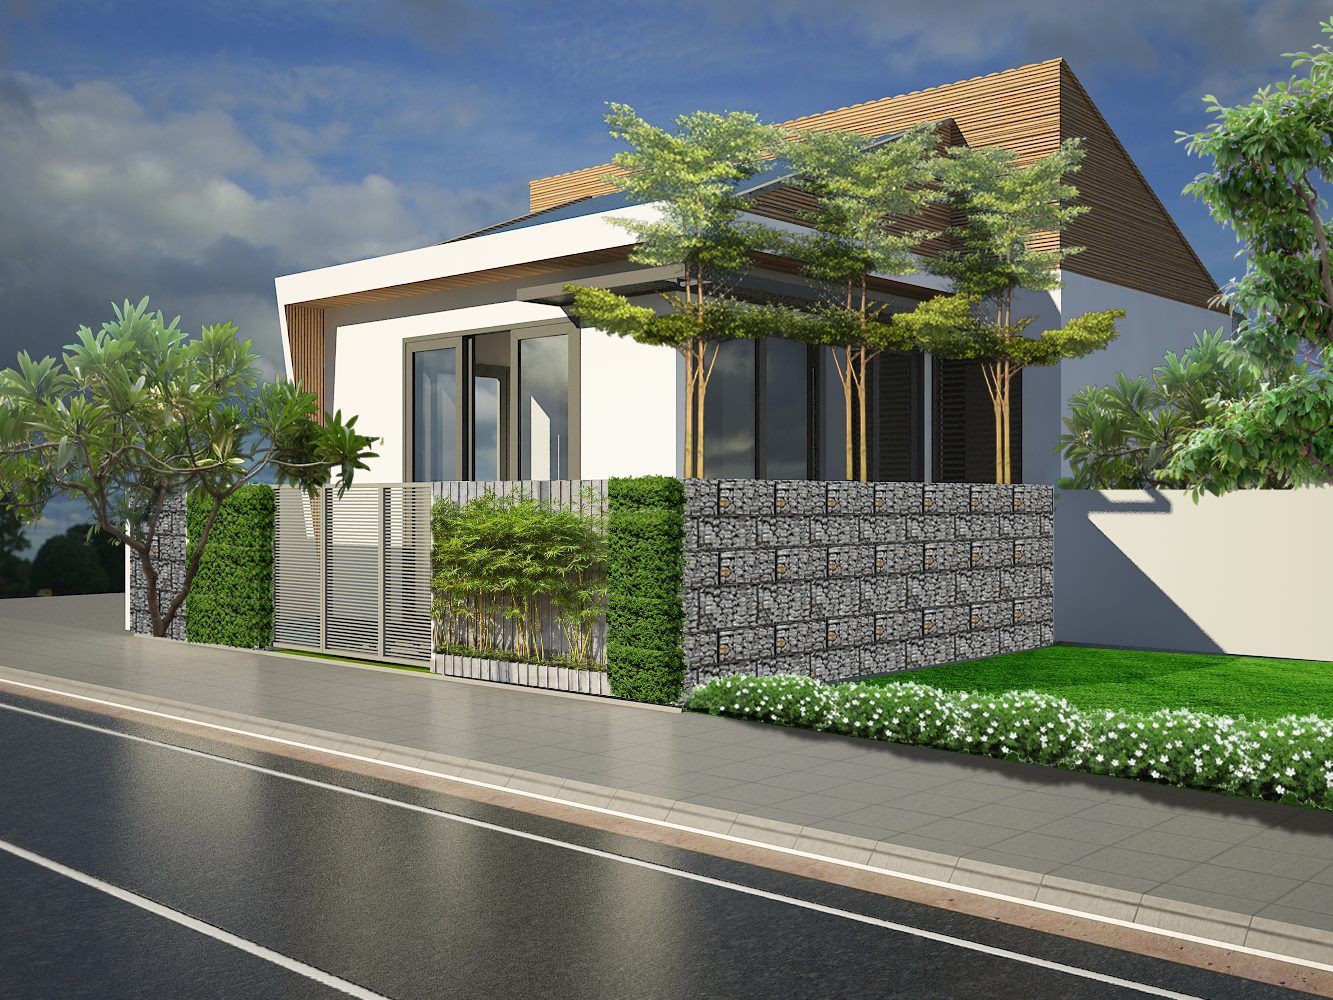 Hình ảnh phối cảnh mẫu nhà cấp 4 có gác lửng phong cách hiện đại, trồng cây xanh ở phía trước, bên hồng nhà